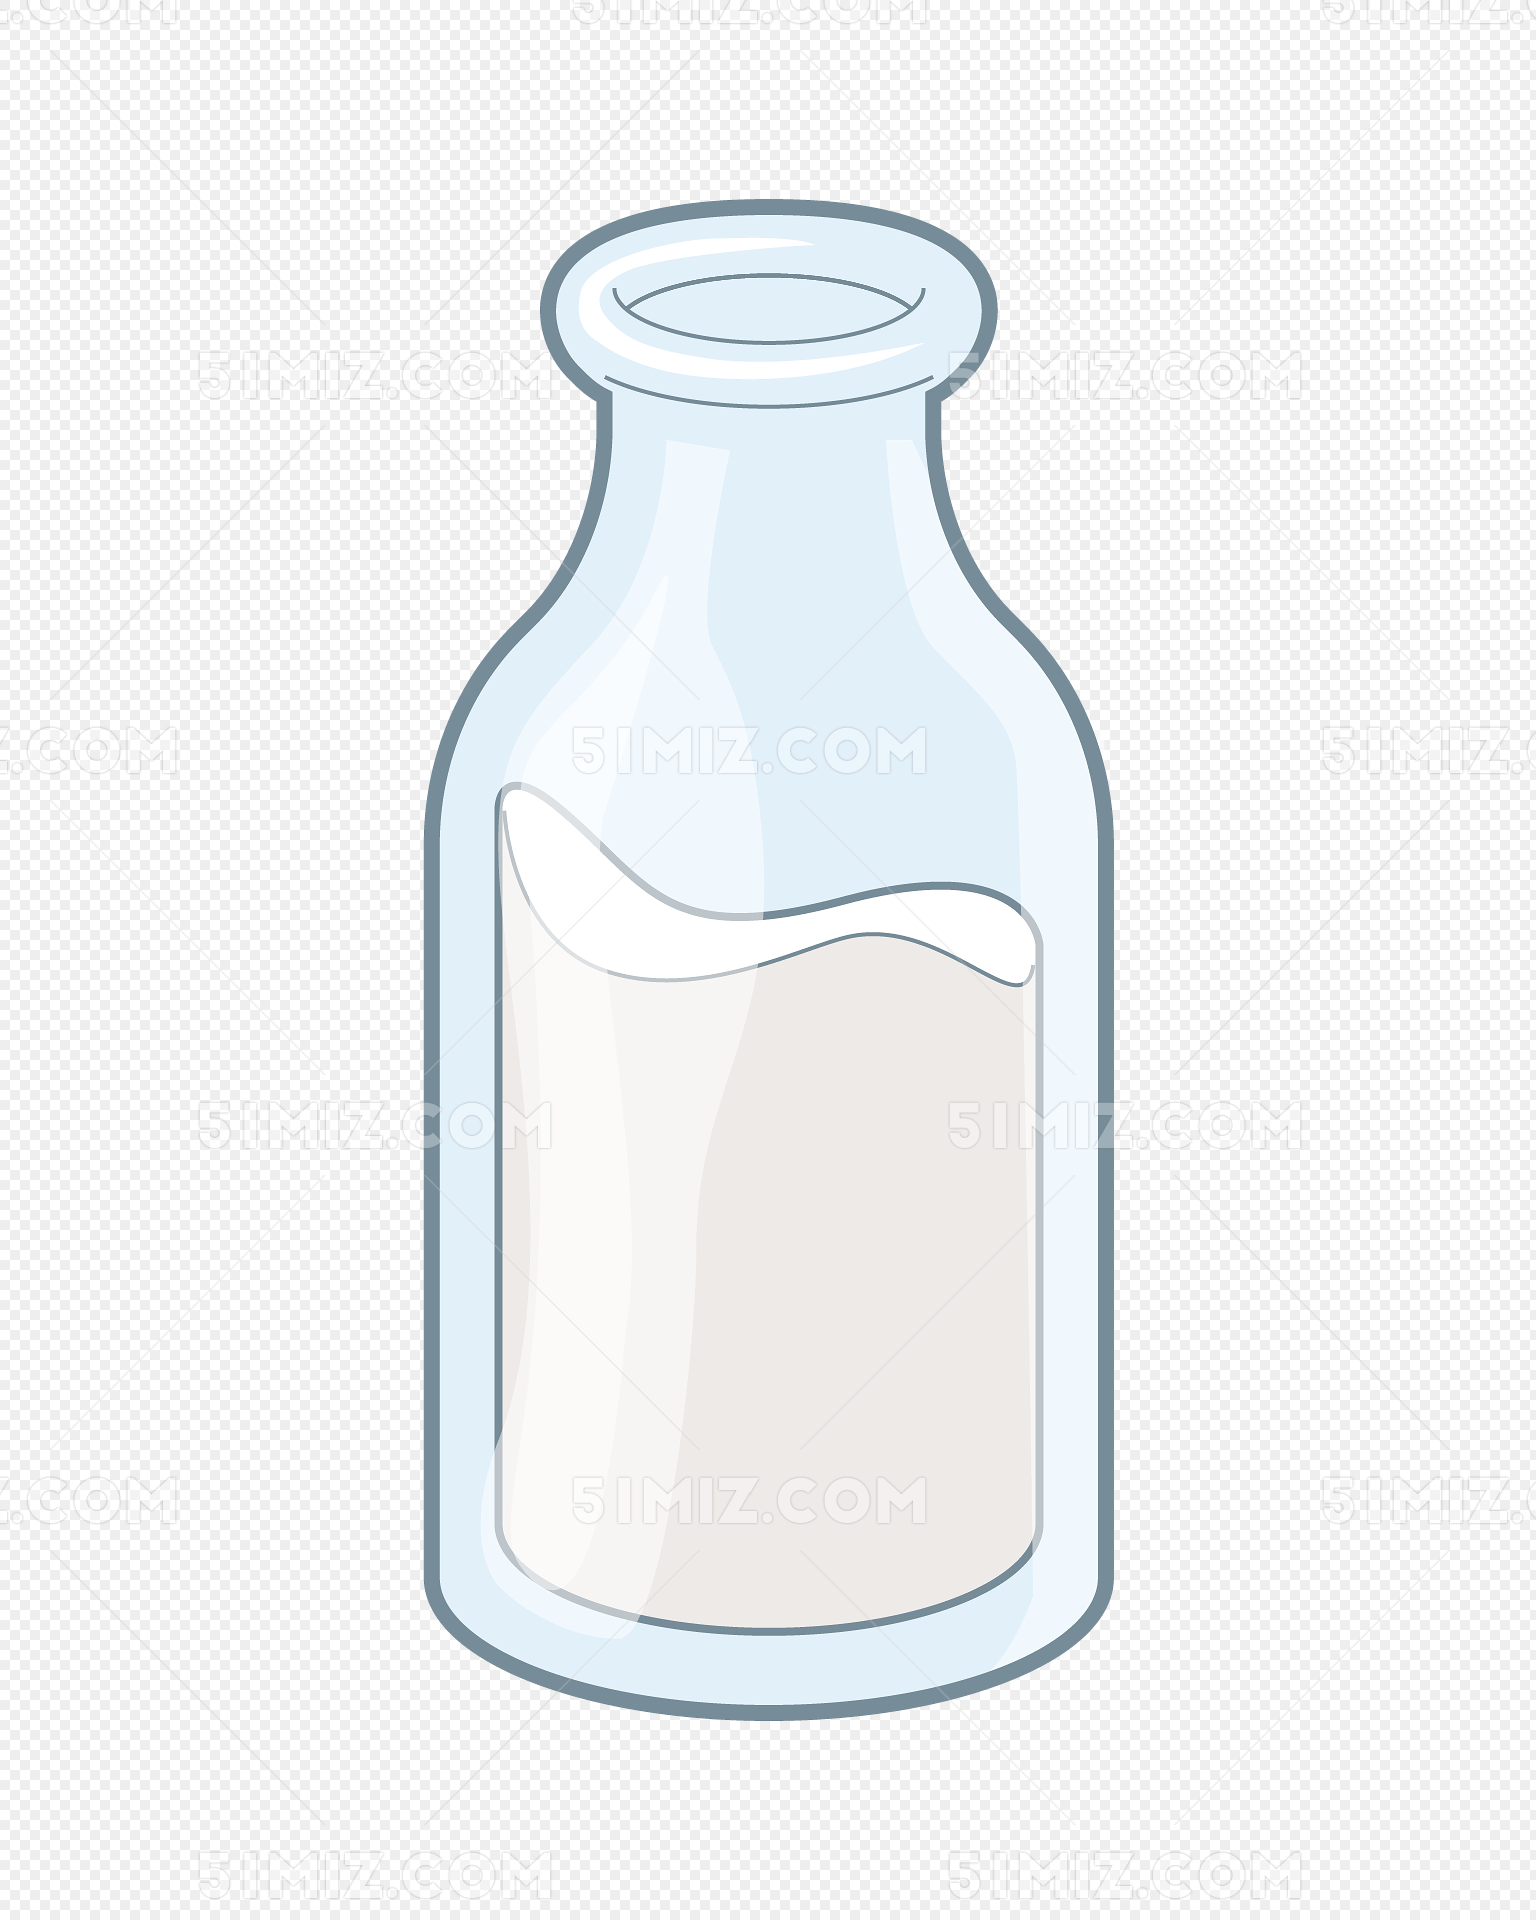 矢量图透明色牛奶瓶